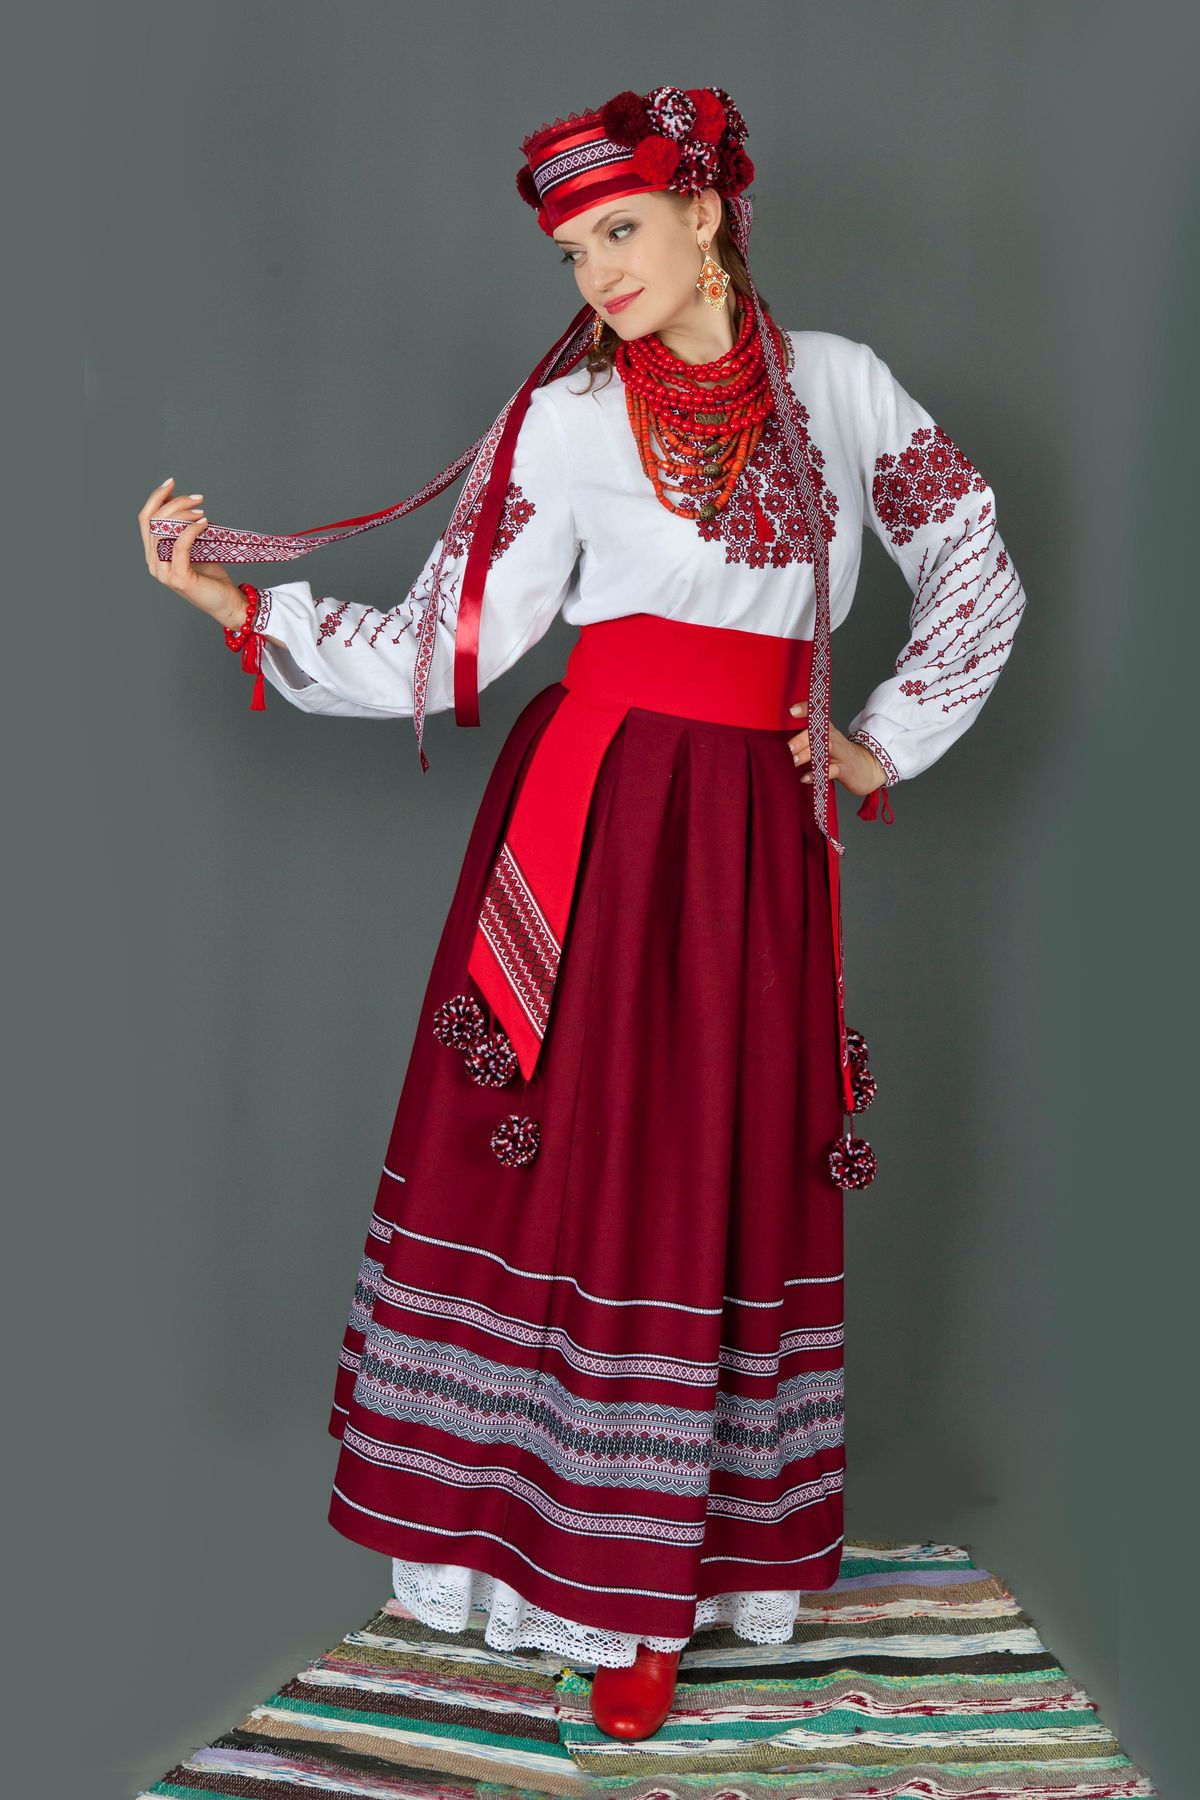 1 национальный украины. Украинский костюм женский. Украинский народный костюм. Украинский народный костюм женский. Традиционный украинский костюм женский.